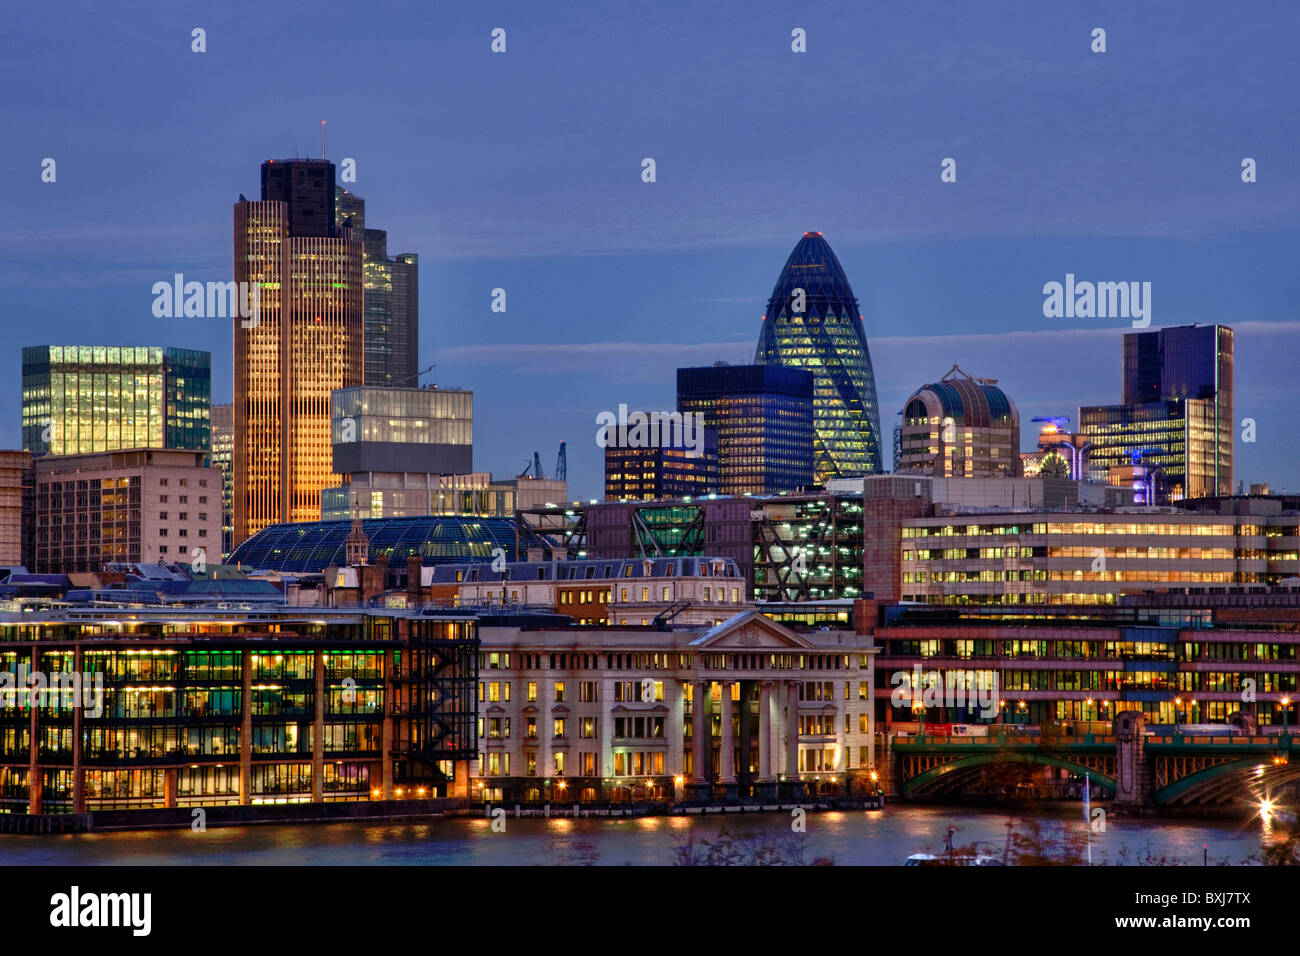 Notte skyline della città distretto finanziario square mile London Inghilterra England Foto Stock